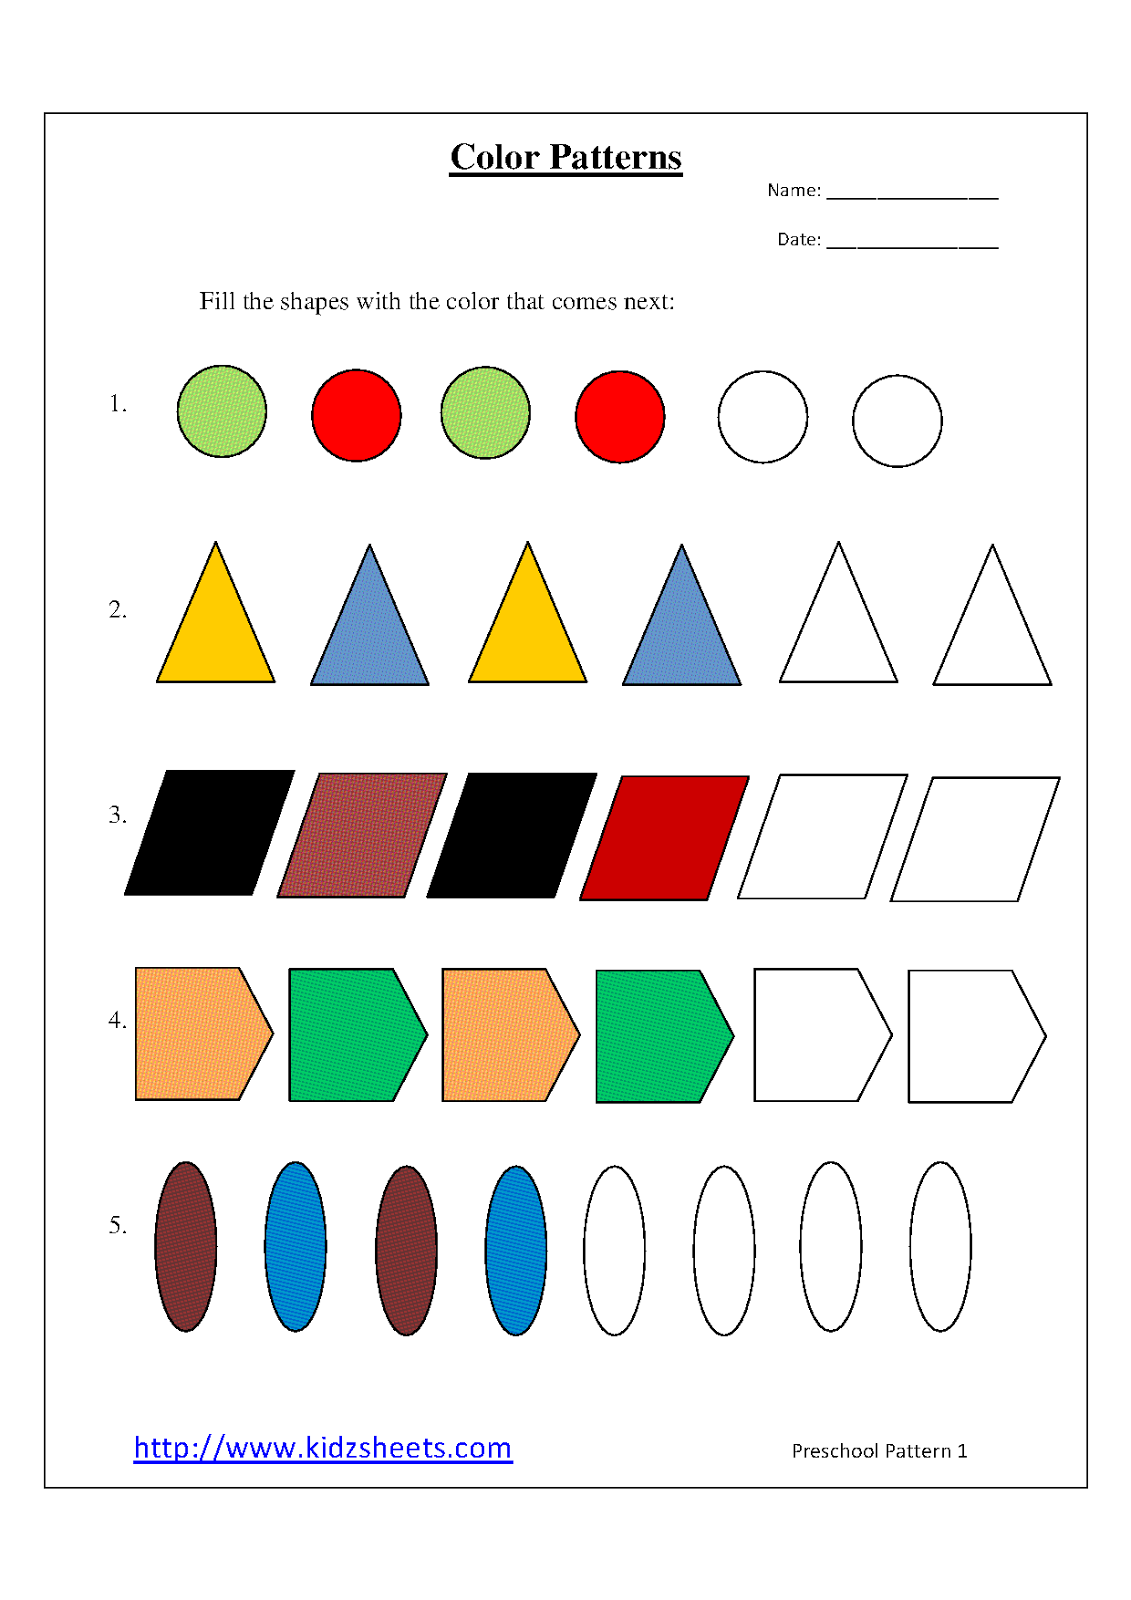 Kidz Worksheets Preschool Color Patterns Worksheet1